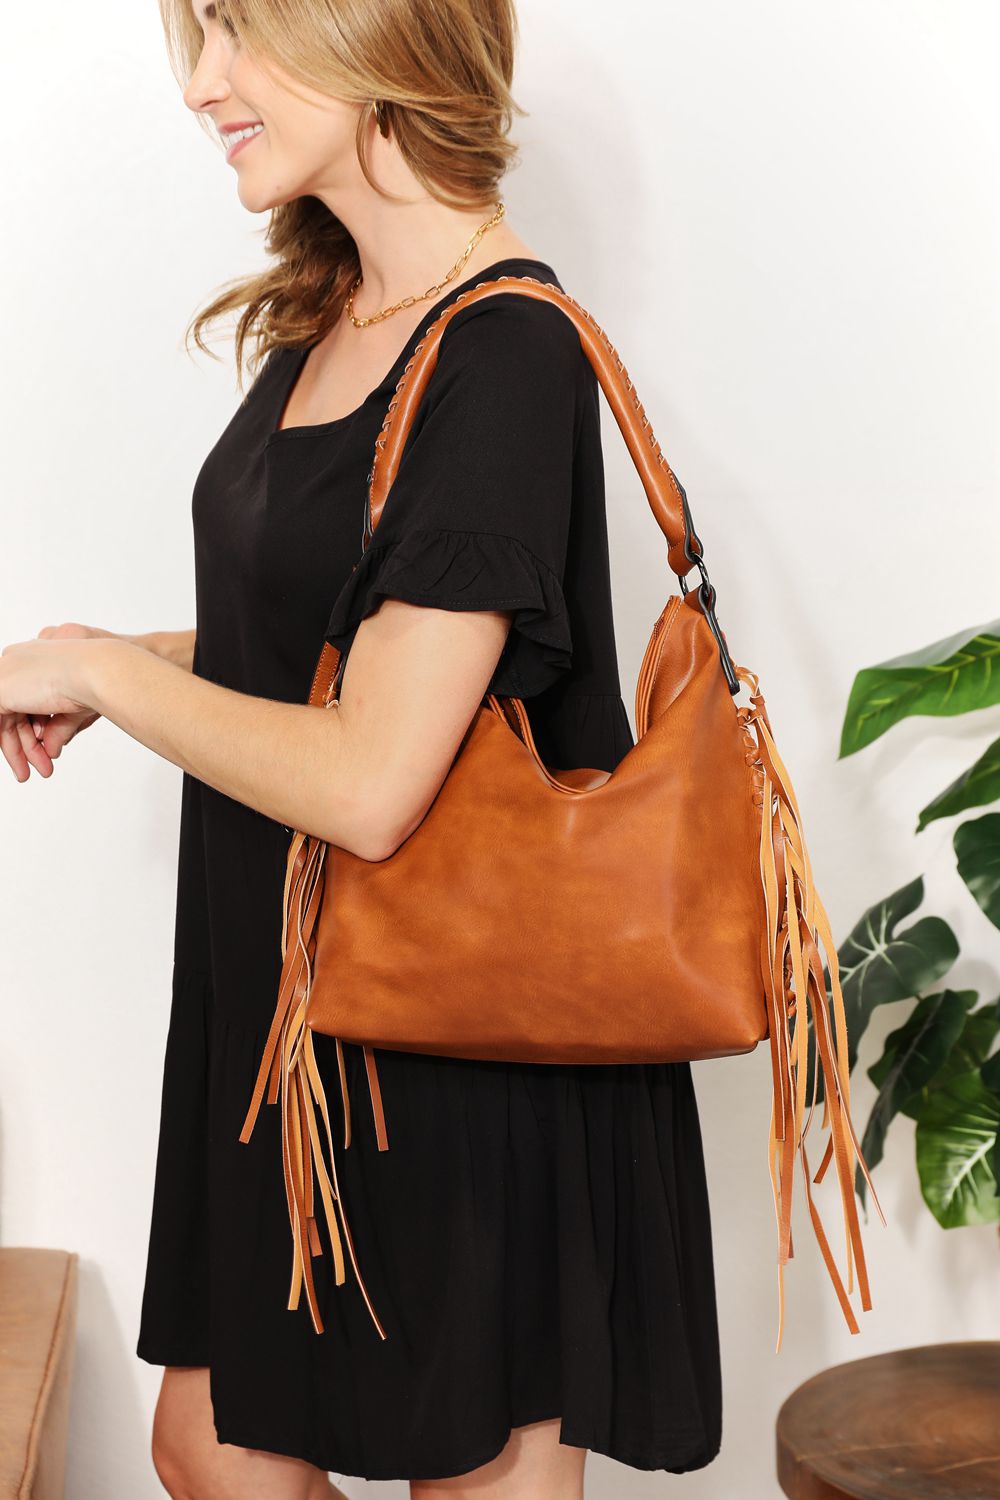 SHOMICO PU Leather Fringe Detail Shoulder Bag apparel & accessories